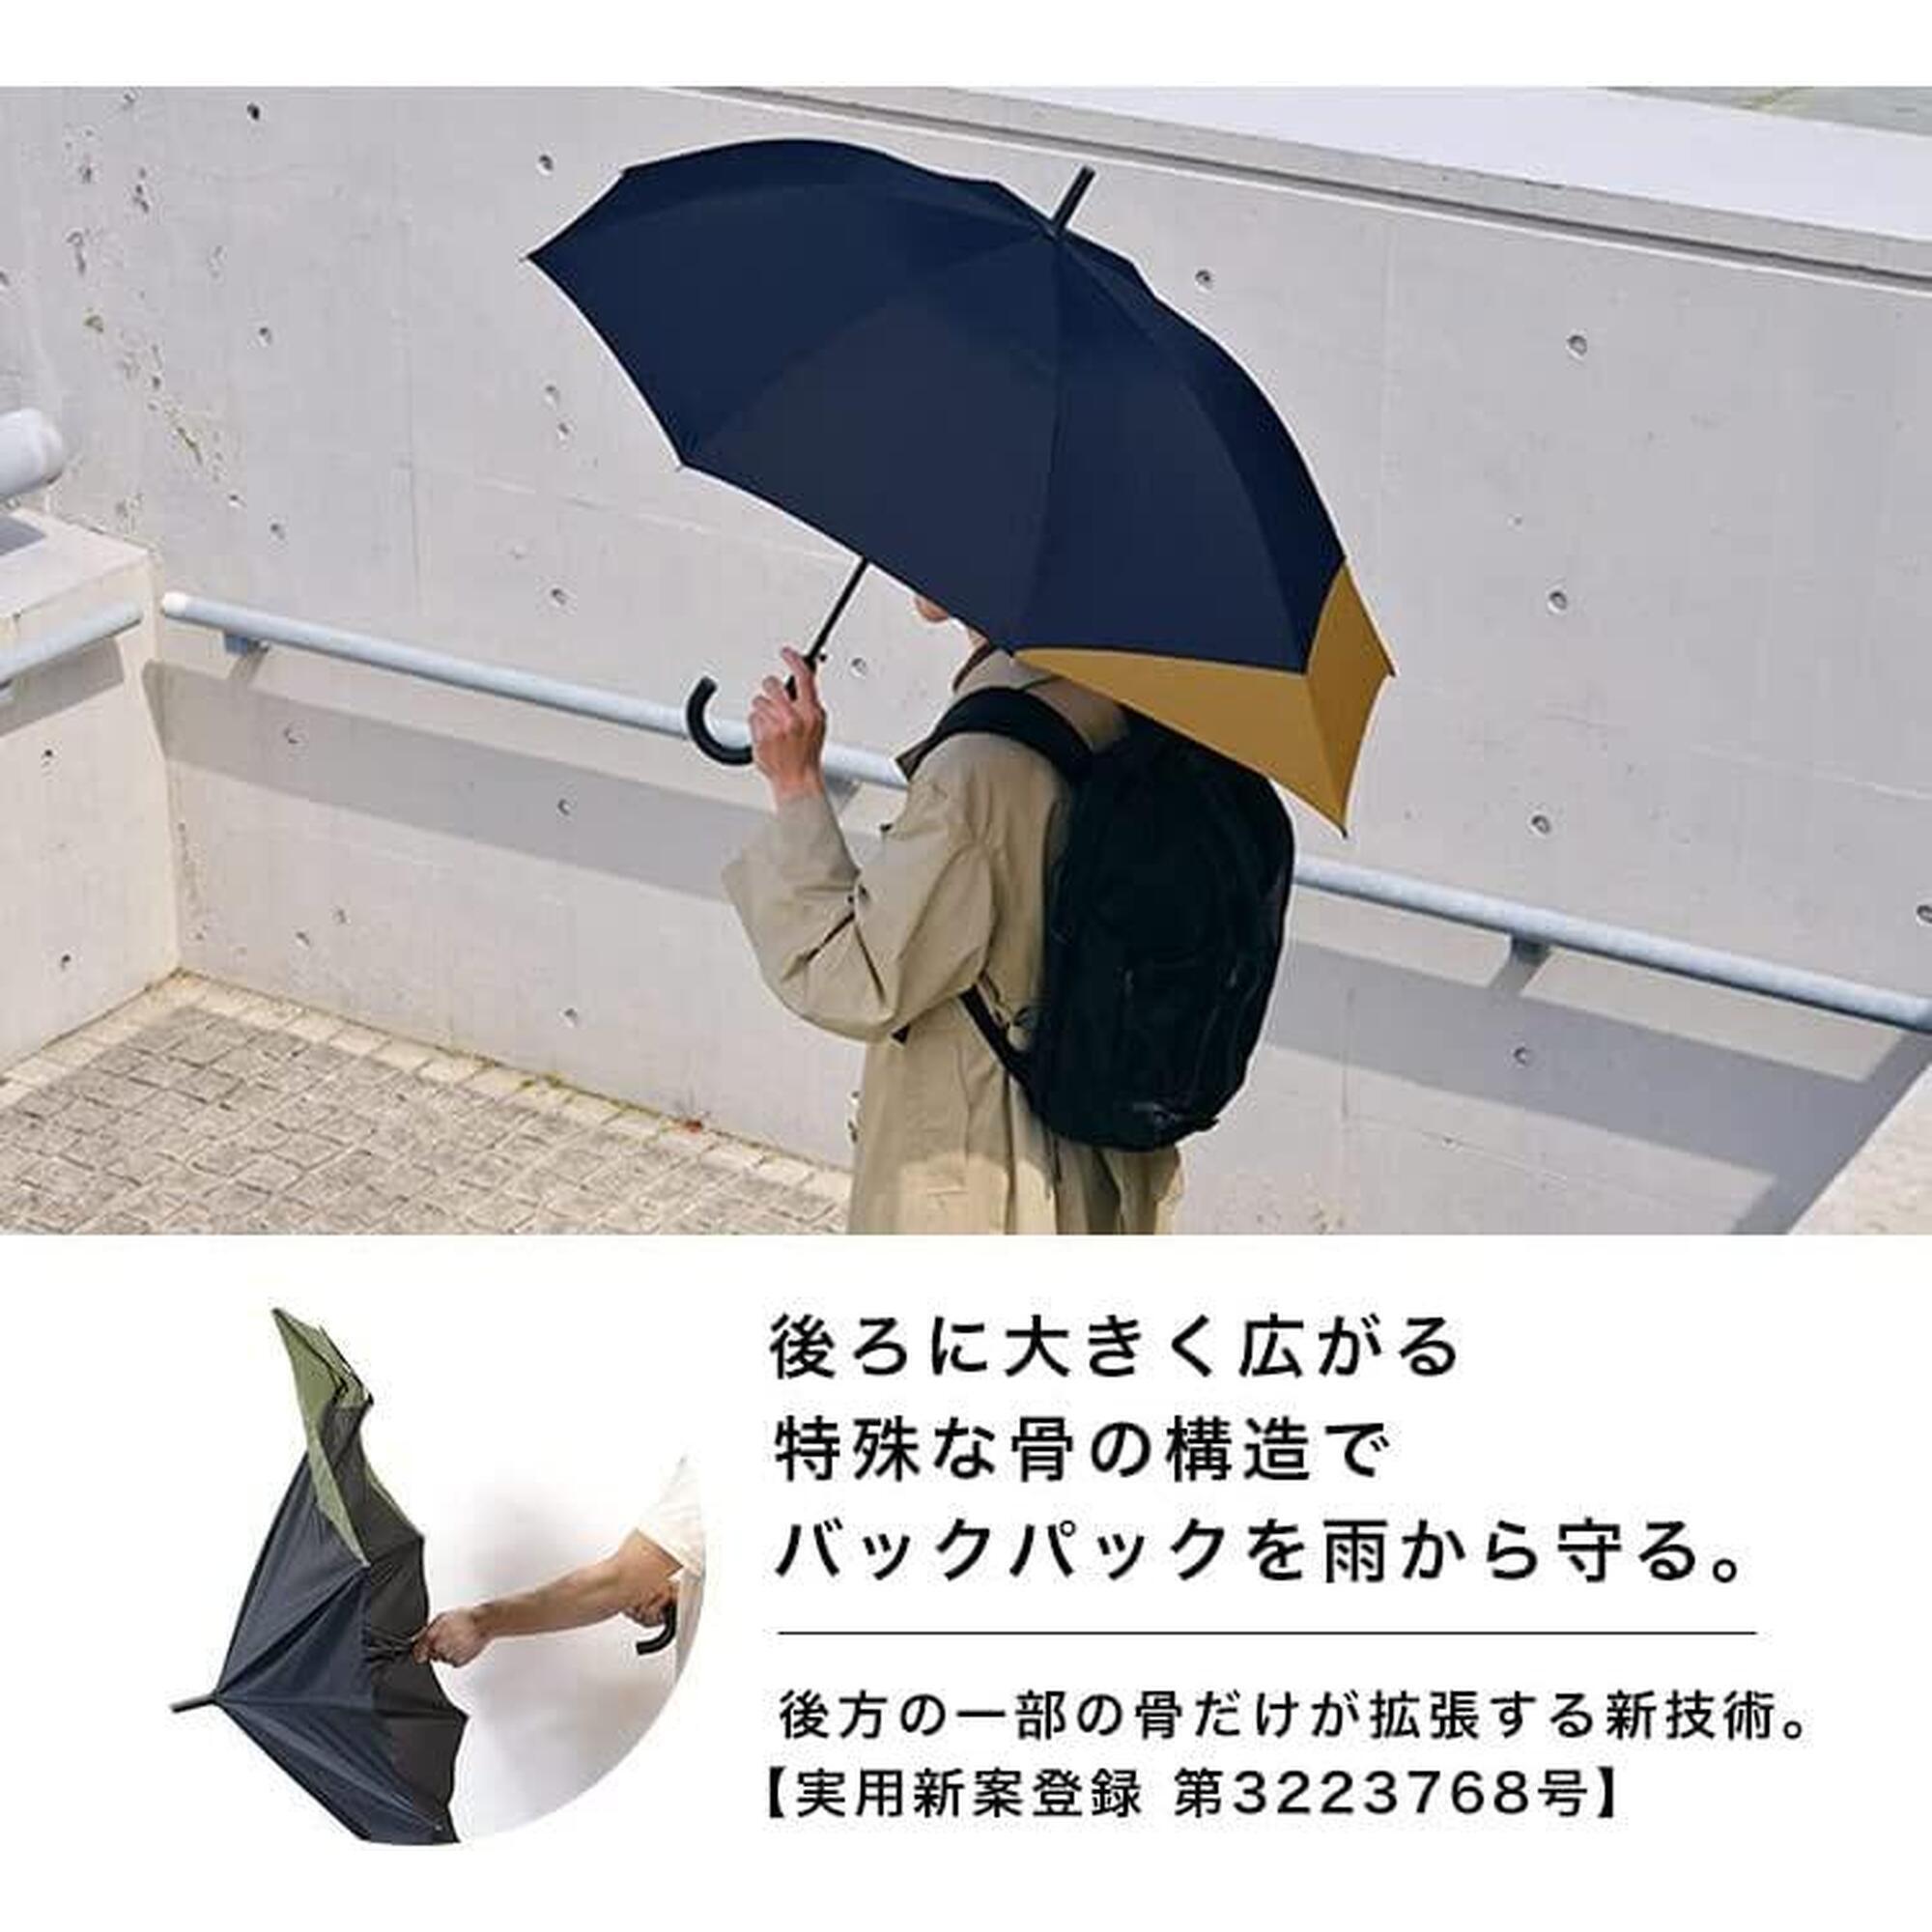 UX Outdoor Couple Long Umbrella - Navy & Camel